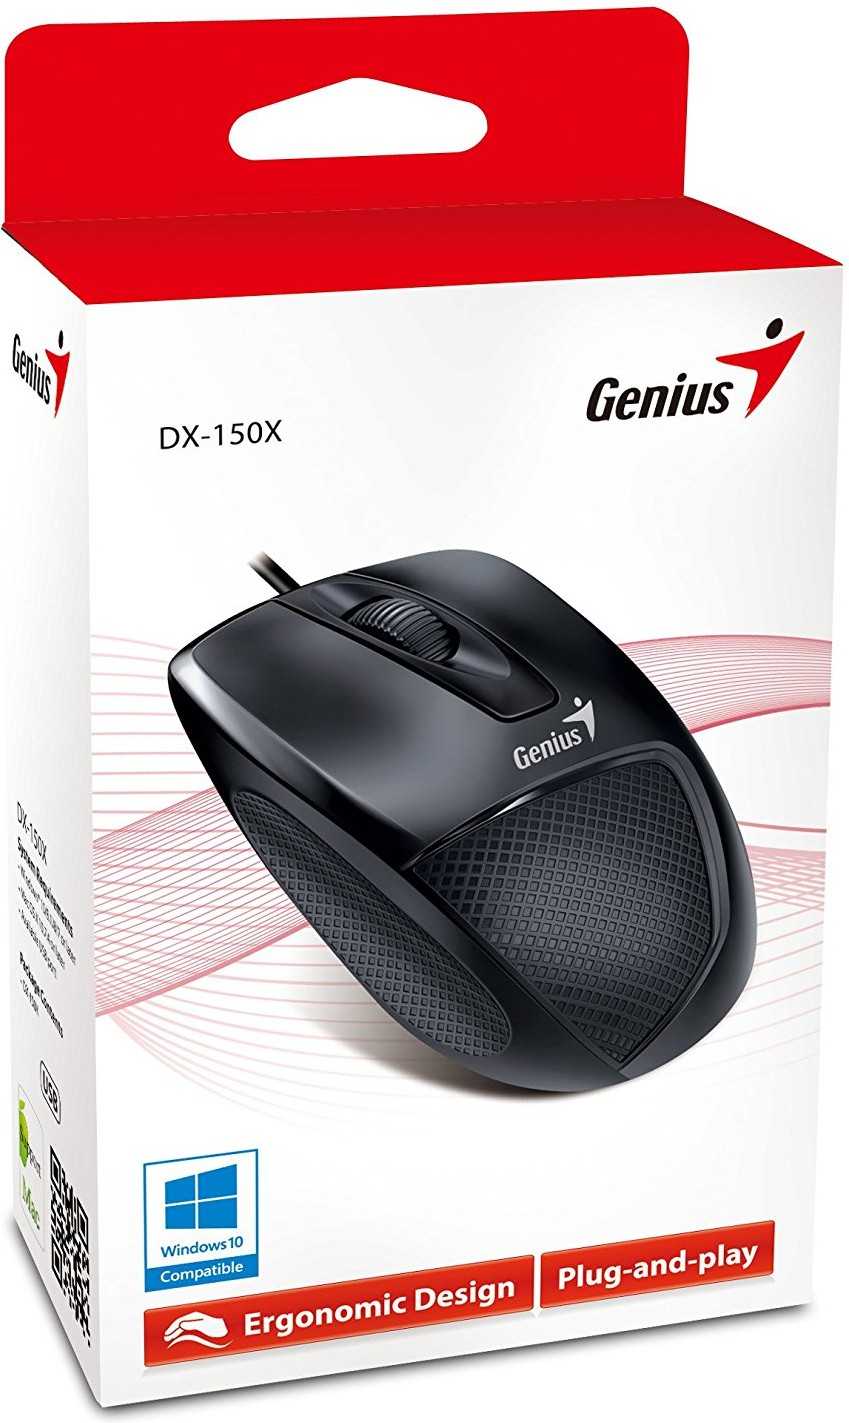 Проводная мышь genius mouse dx-110 black usb 2.0 — купить, цена и характеристики, отзывы